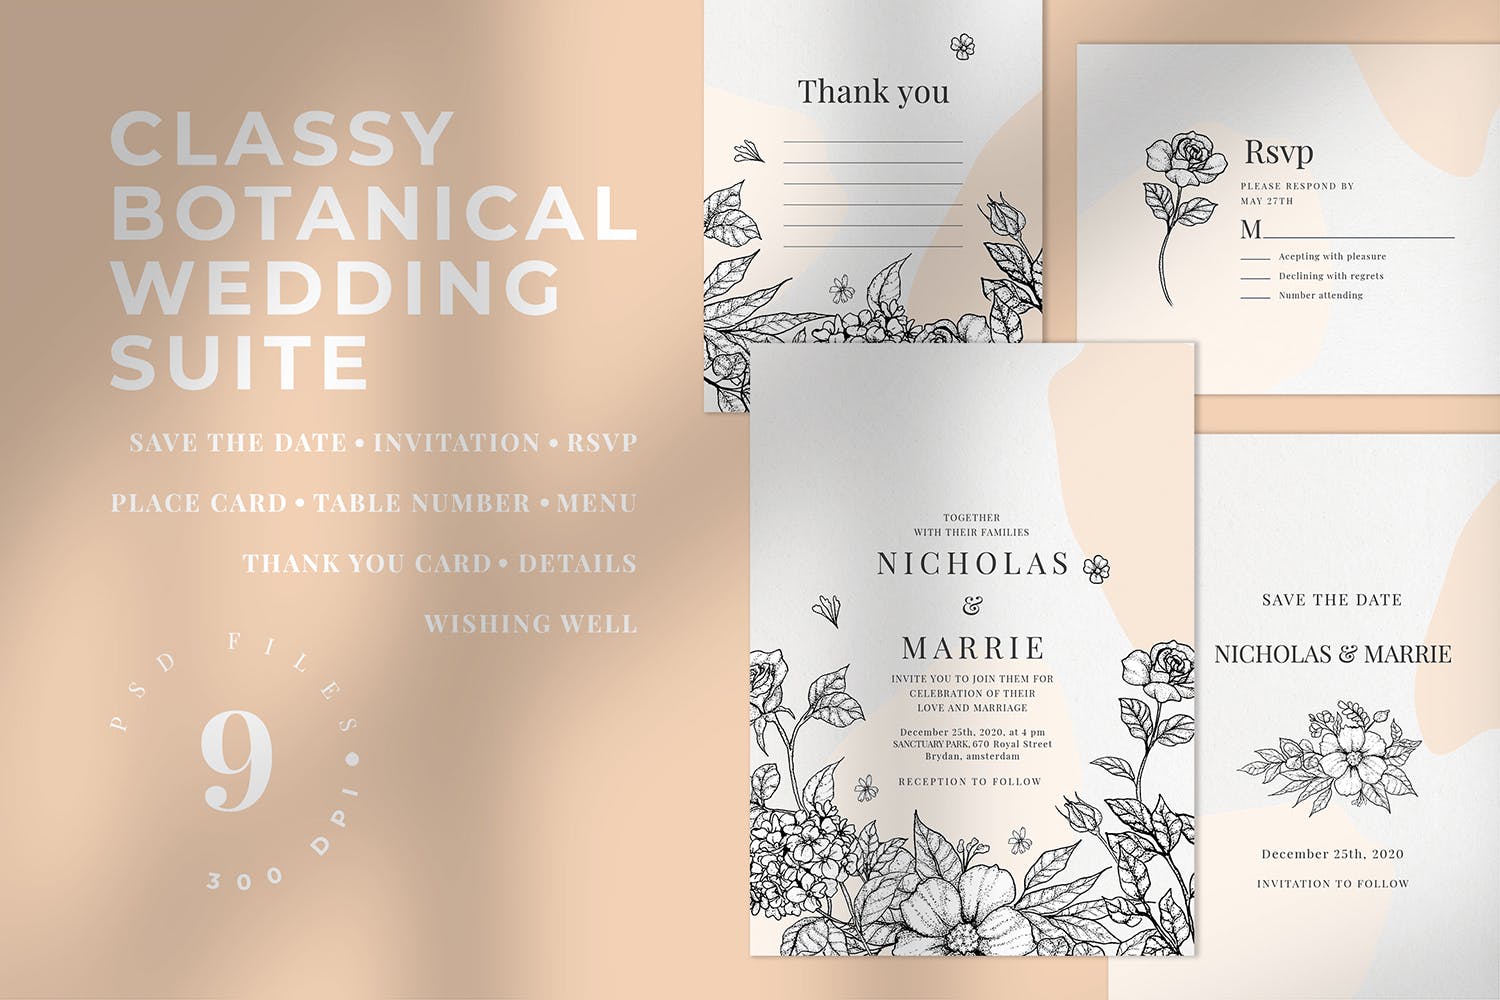 优雅素色花卉手绘图案婚礼邀请设计套件 Classy Botanical Wedding Suite插图(1)